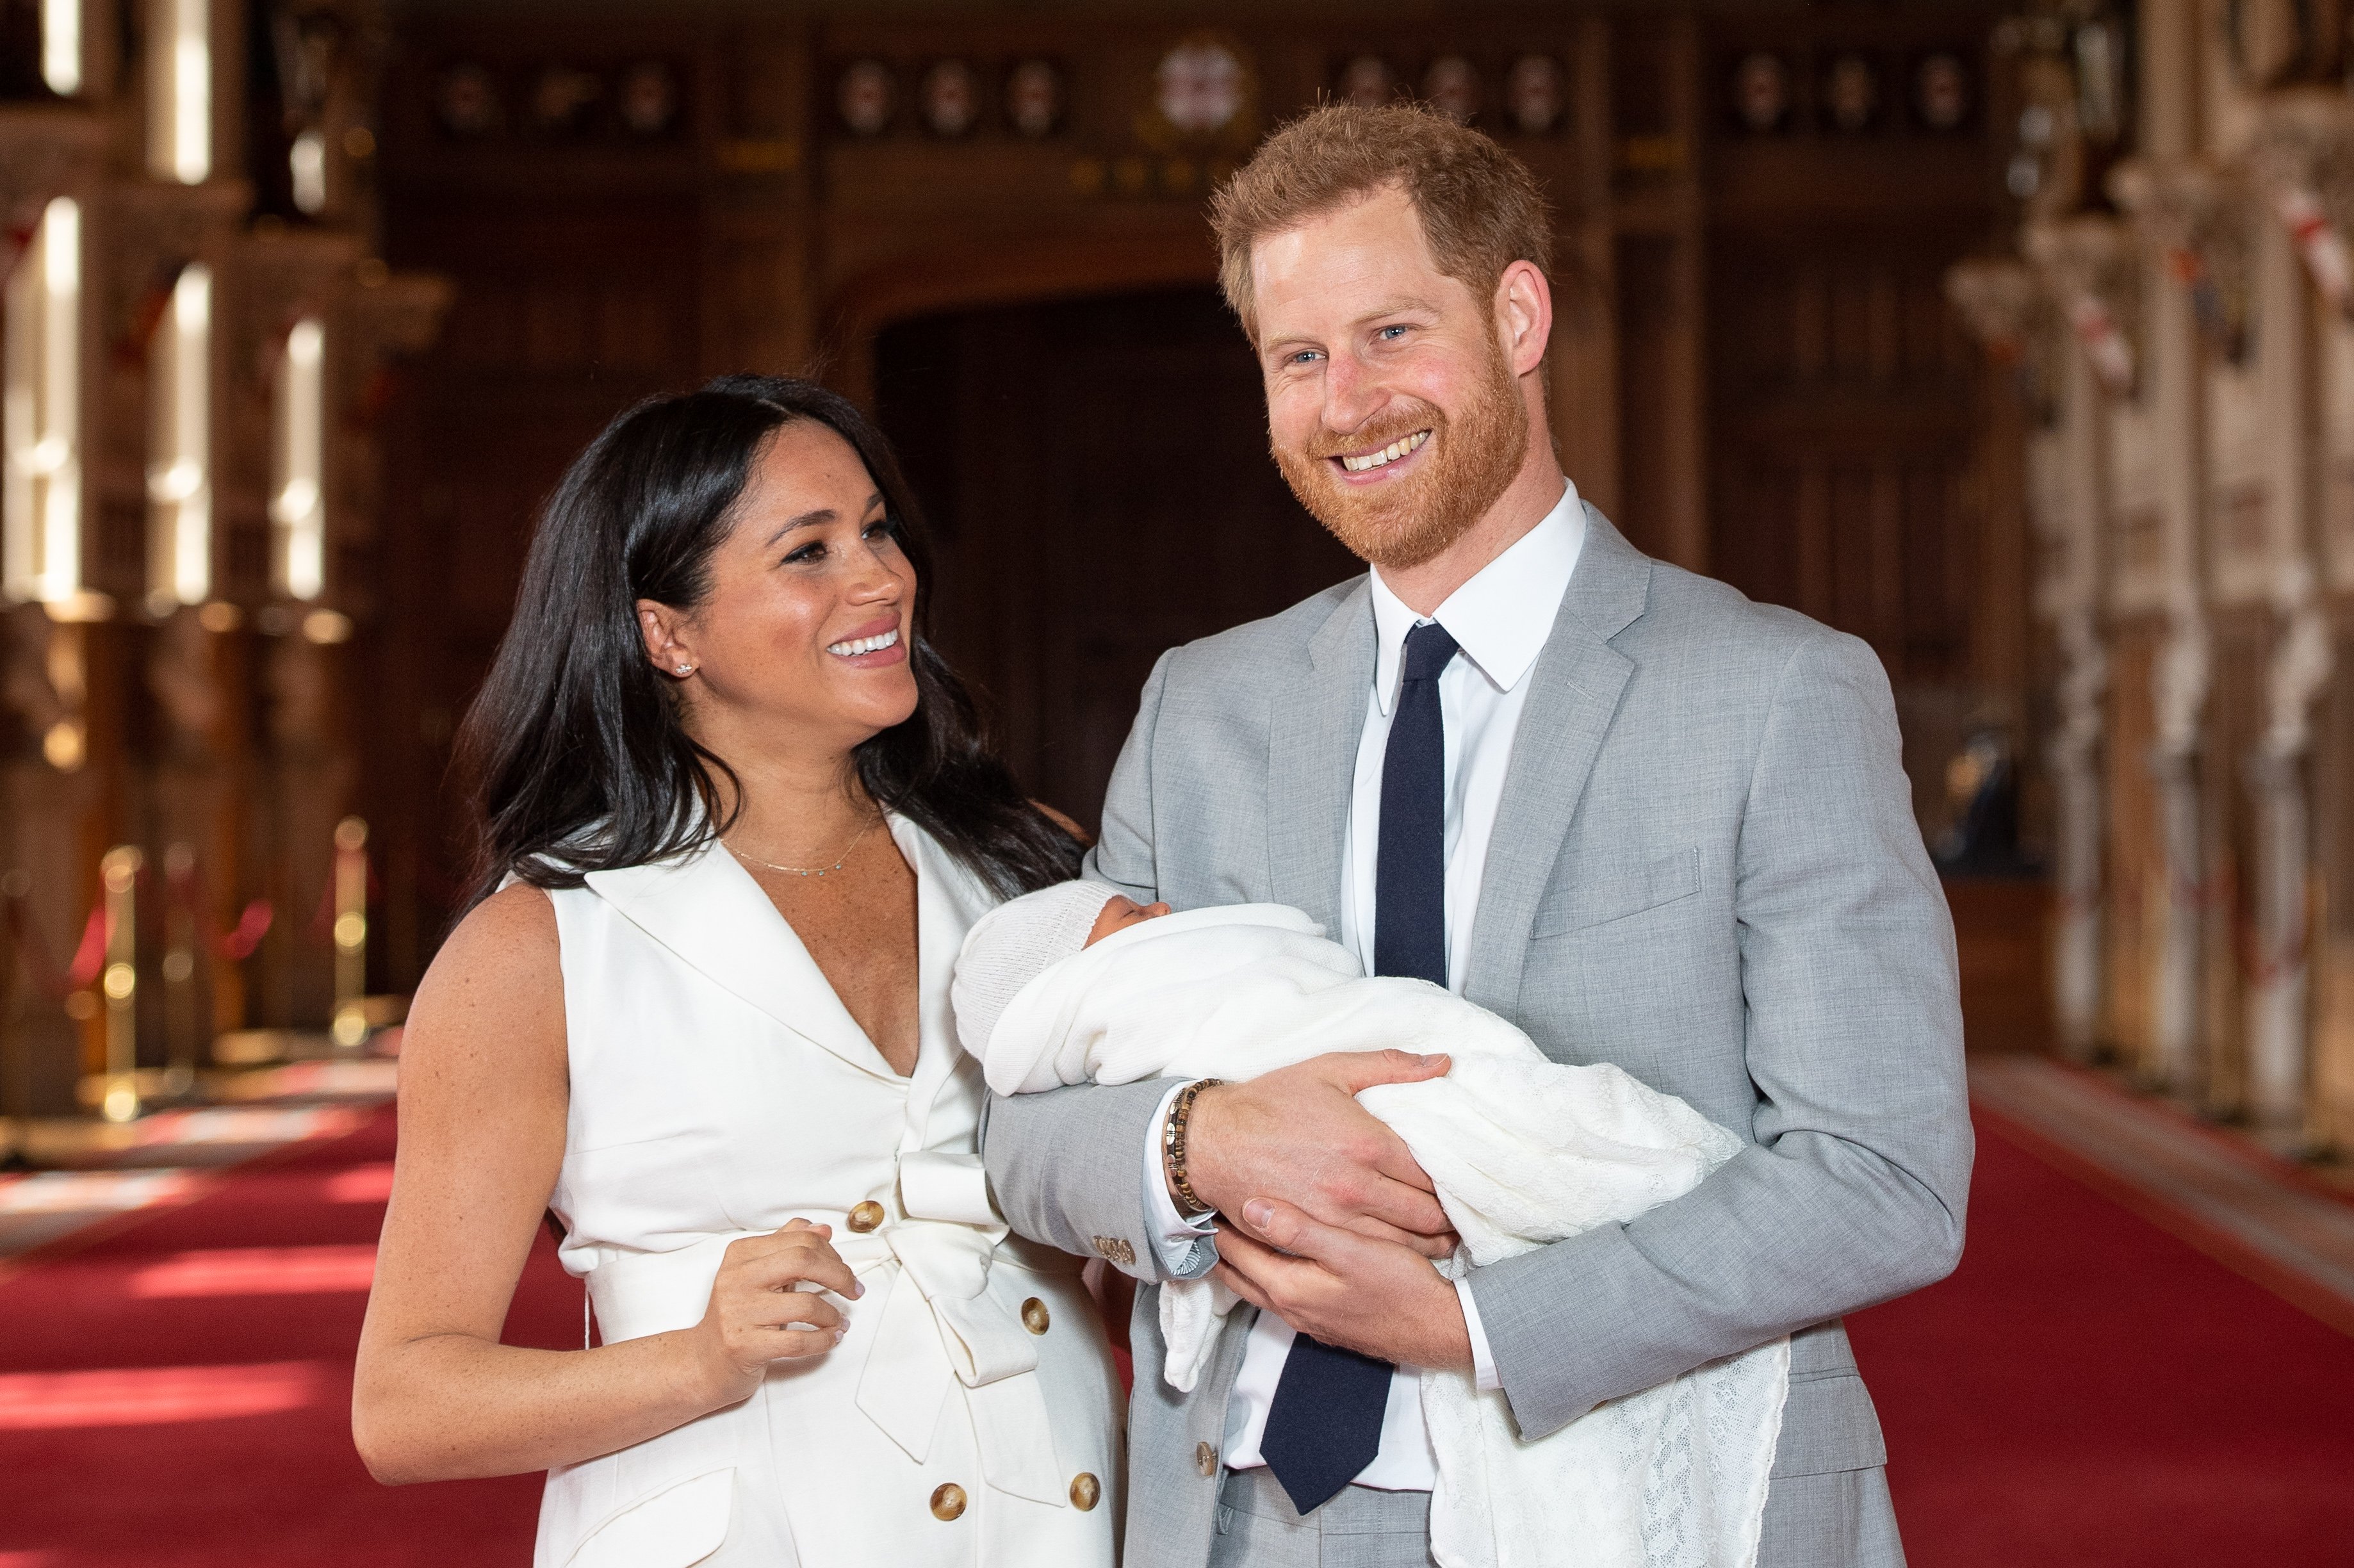 Le prince Harry, duc de Sussex, et Meghan, duchesse de Sussex, posent avec leur nouveau-né, Archie Harrison Mountbatten-Windsor, lors d'un photocall à St George's Hall au château de Windsor, le 8 mai 2019 à Windsor, en Angleterre. | Source : Getty Images